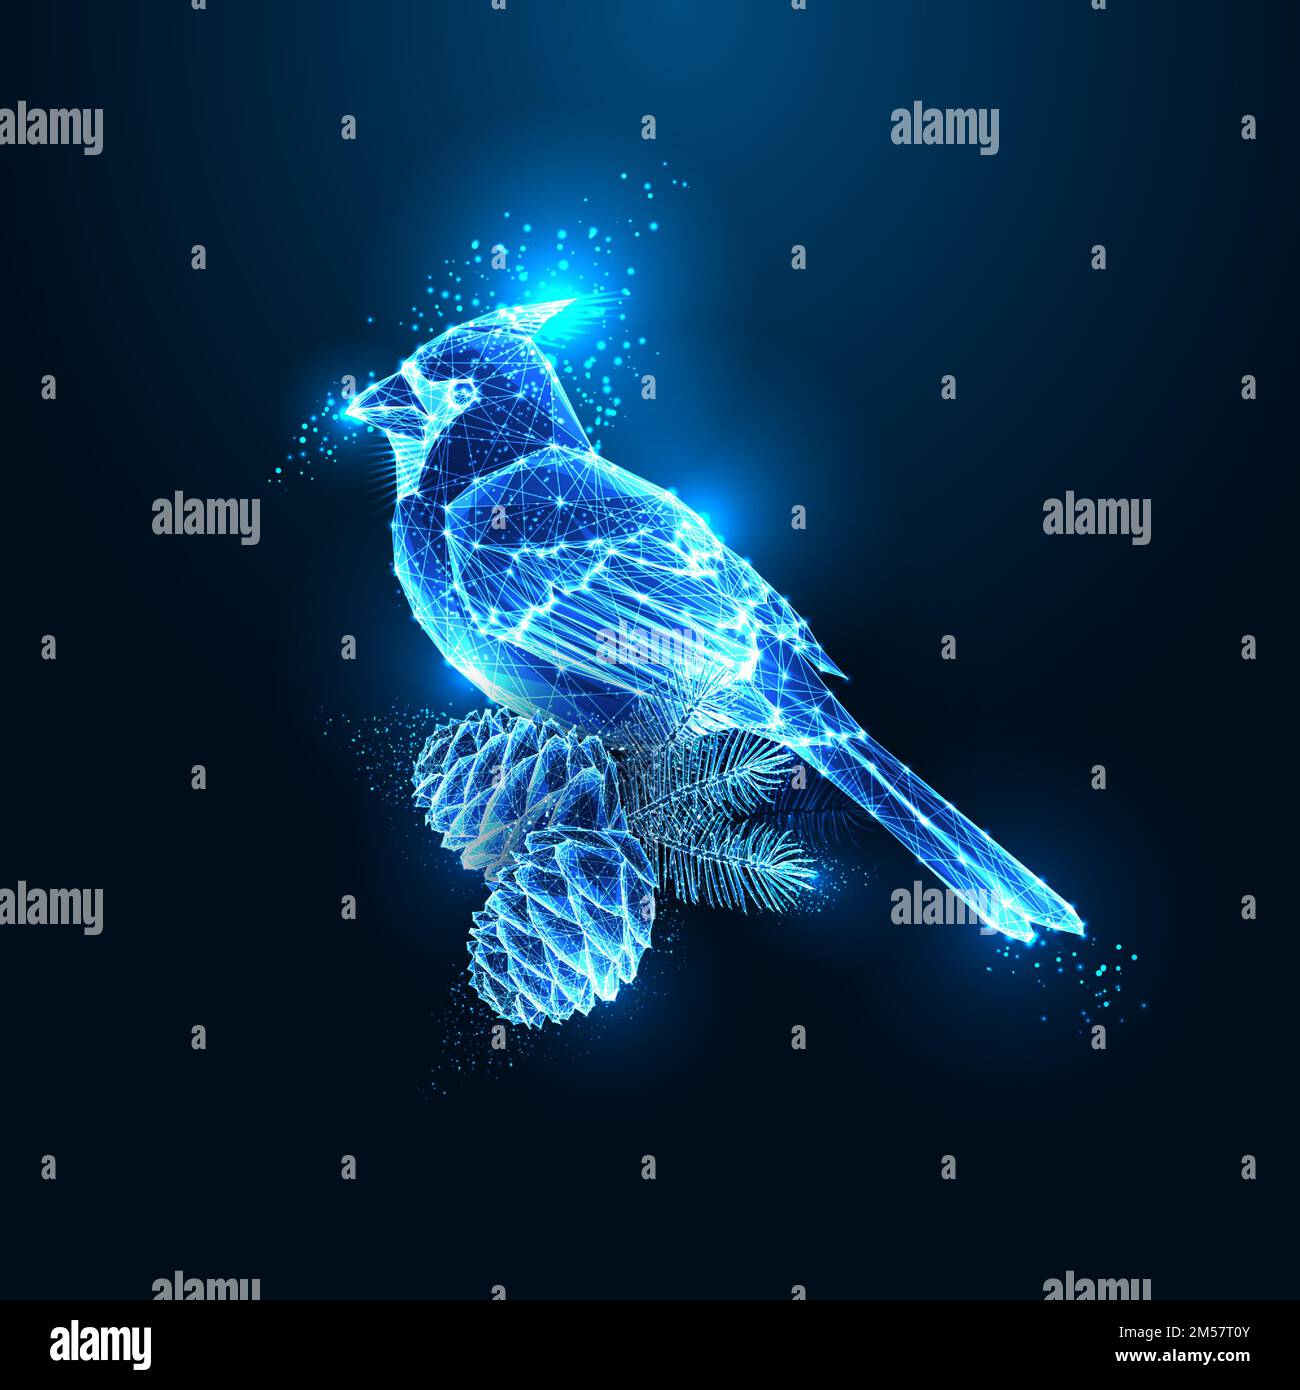 Abstrakte Kardinalvogel- und Kiefernzapfen in furutistisch leuchtendem polygonalen Stil isoliert auf dunkelblauem Hintergrund. Vogelhologramm. Modernes Drahtmodelldesign V Stock Vektor